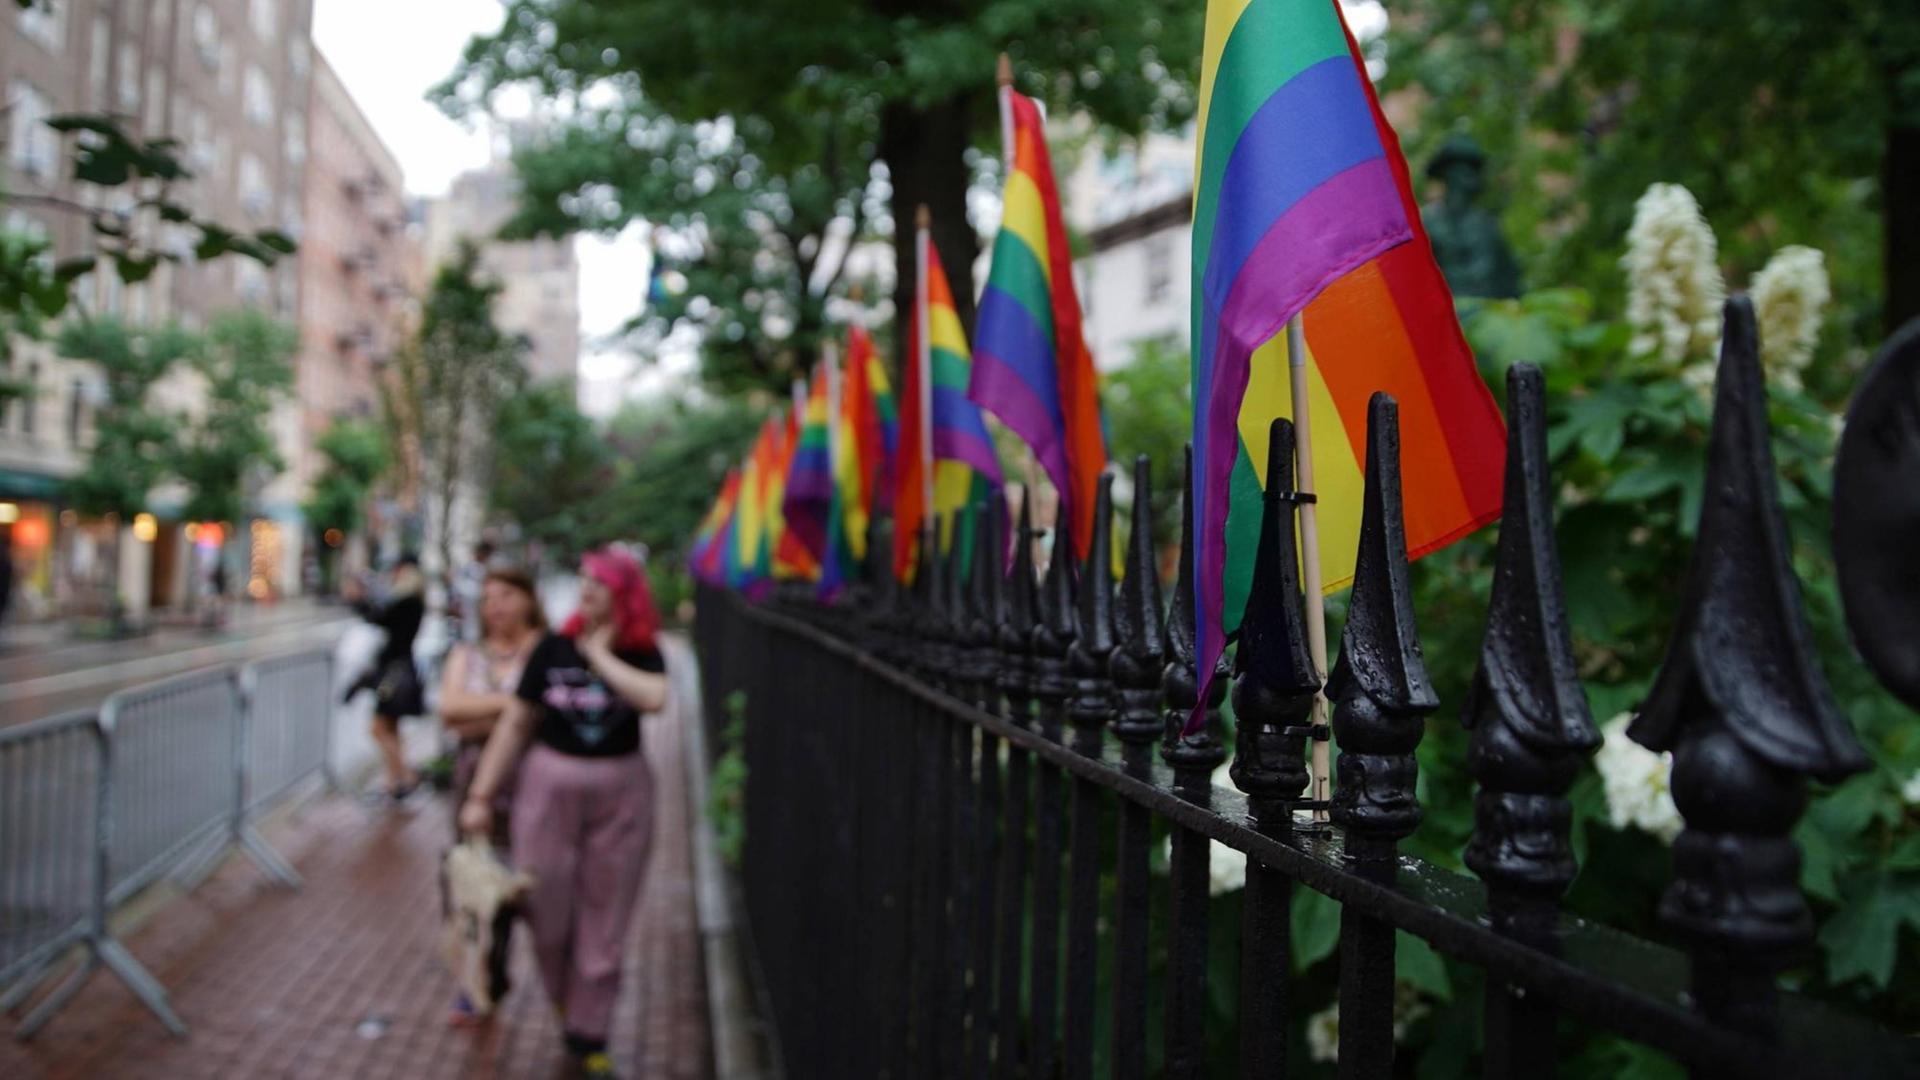 An einem Stahlzaun sind Regenbogenflaggen befestigt. In der Unschärfe laufen Frauen vorbei. Eine trägt eine pinke Frisur.